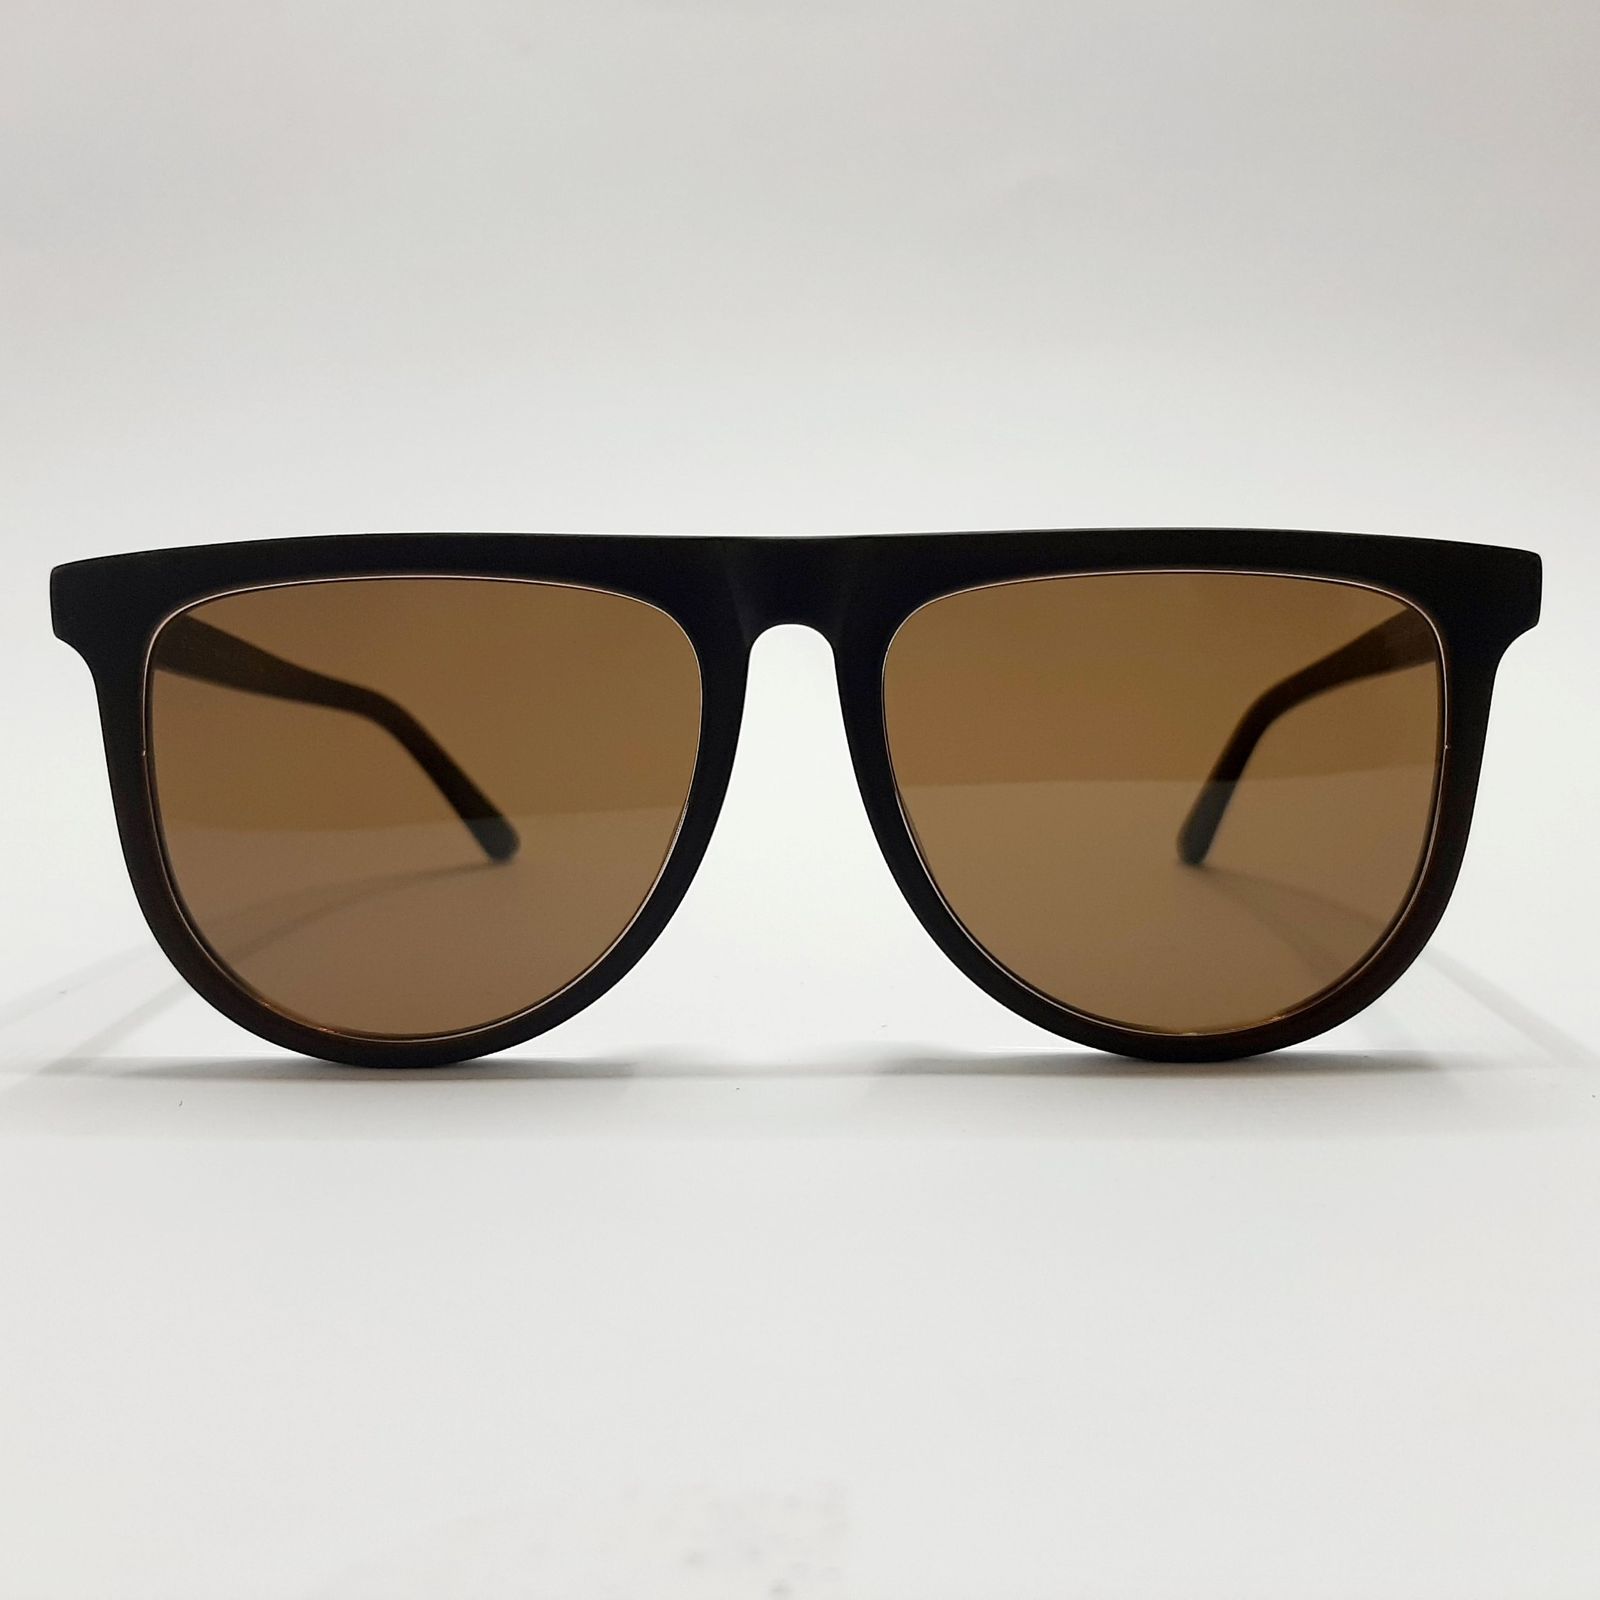 عینک آفتابی گوچی مدل GG1070c5 -  - 2